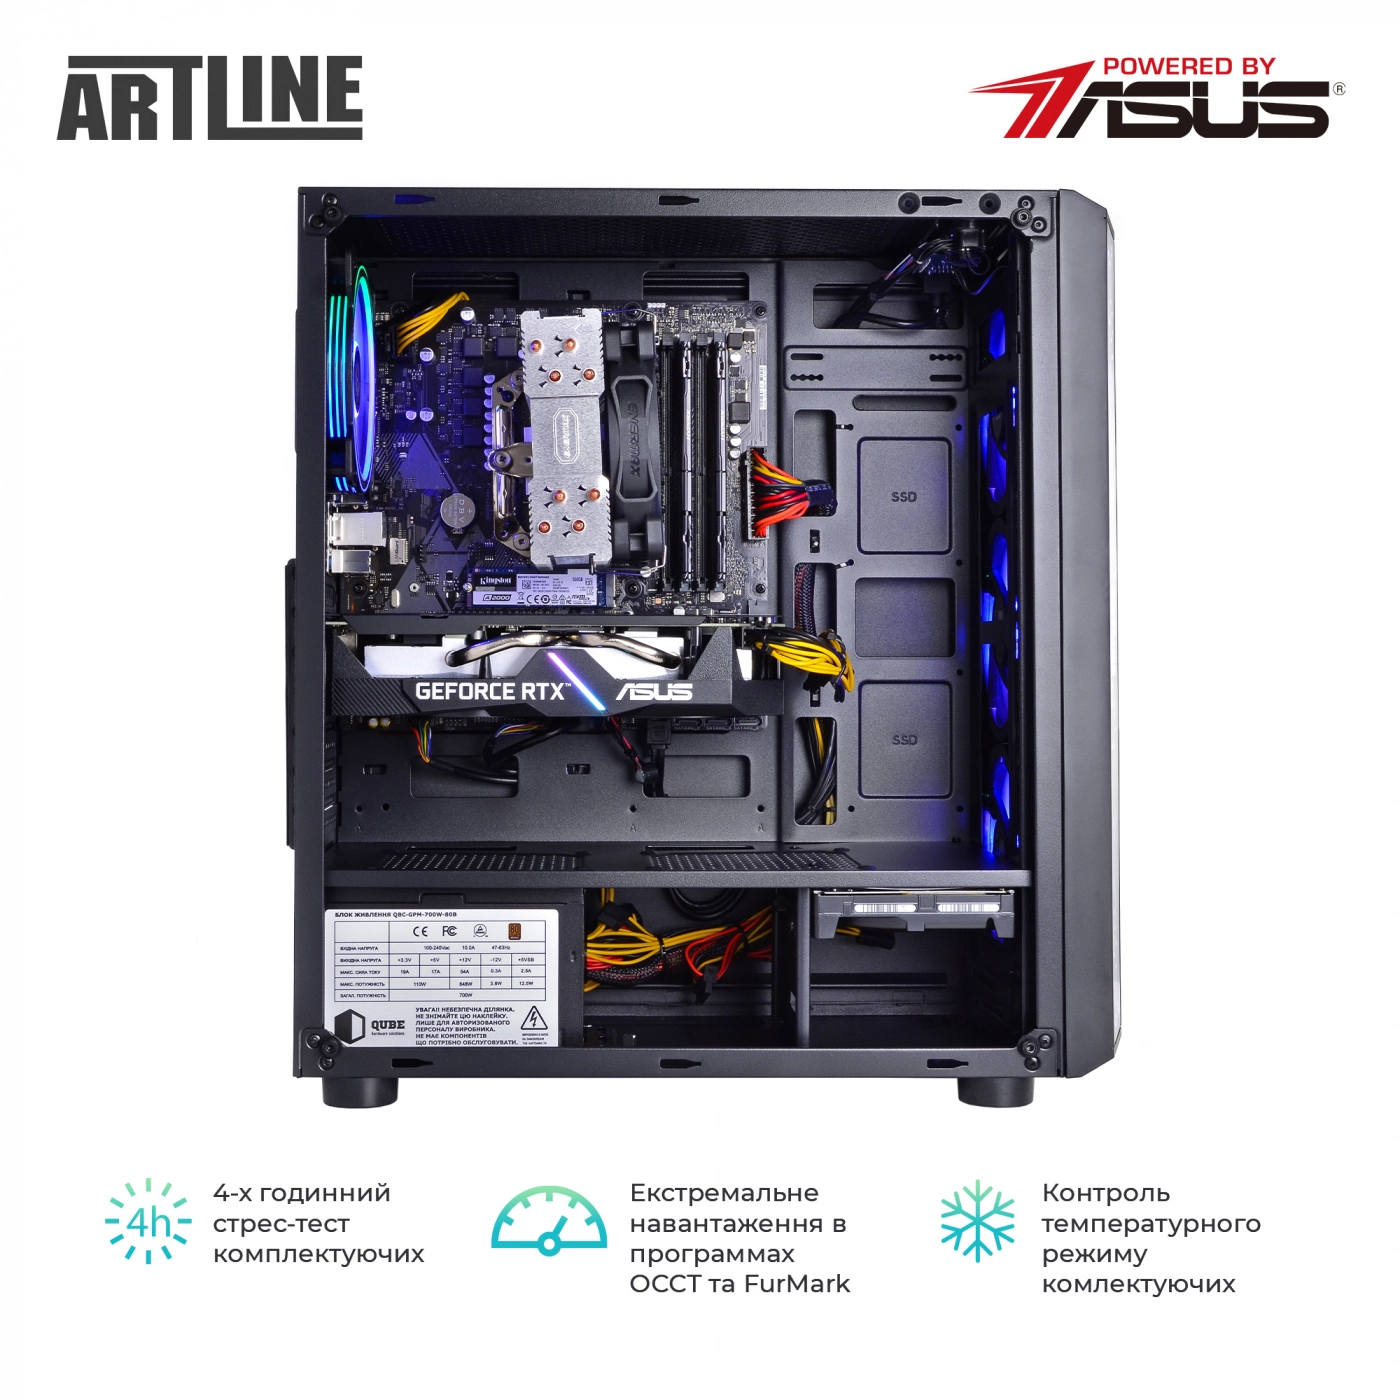 Купить Компьютер ARTLINE Gaming X65v25 - фото 7